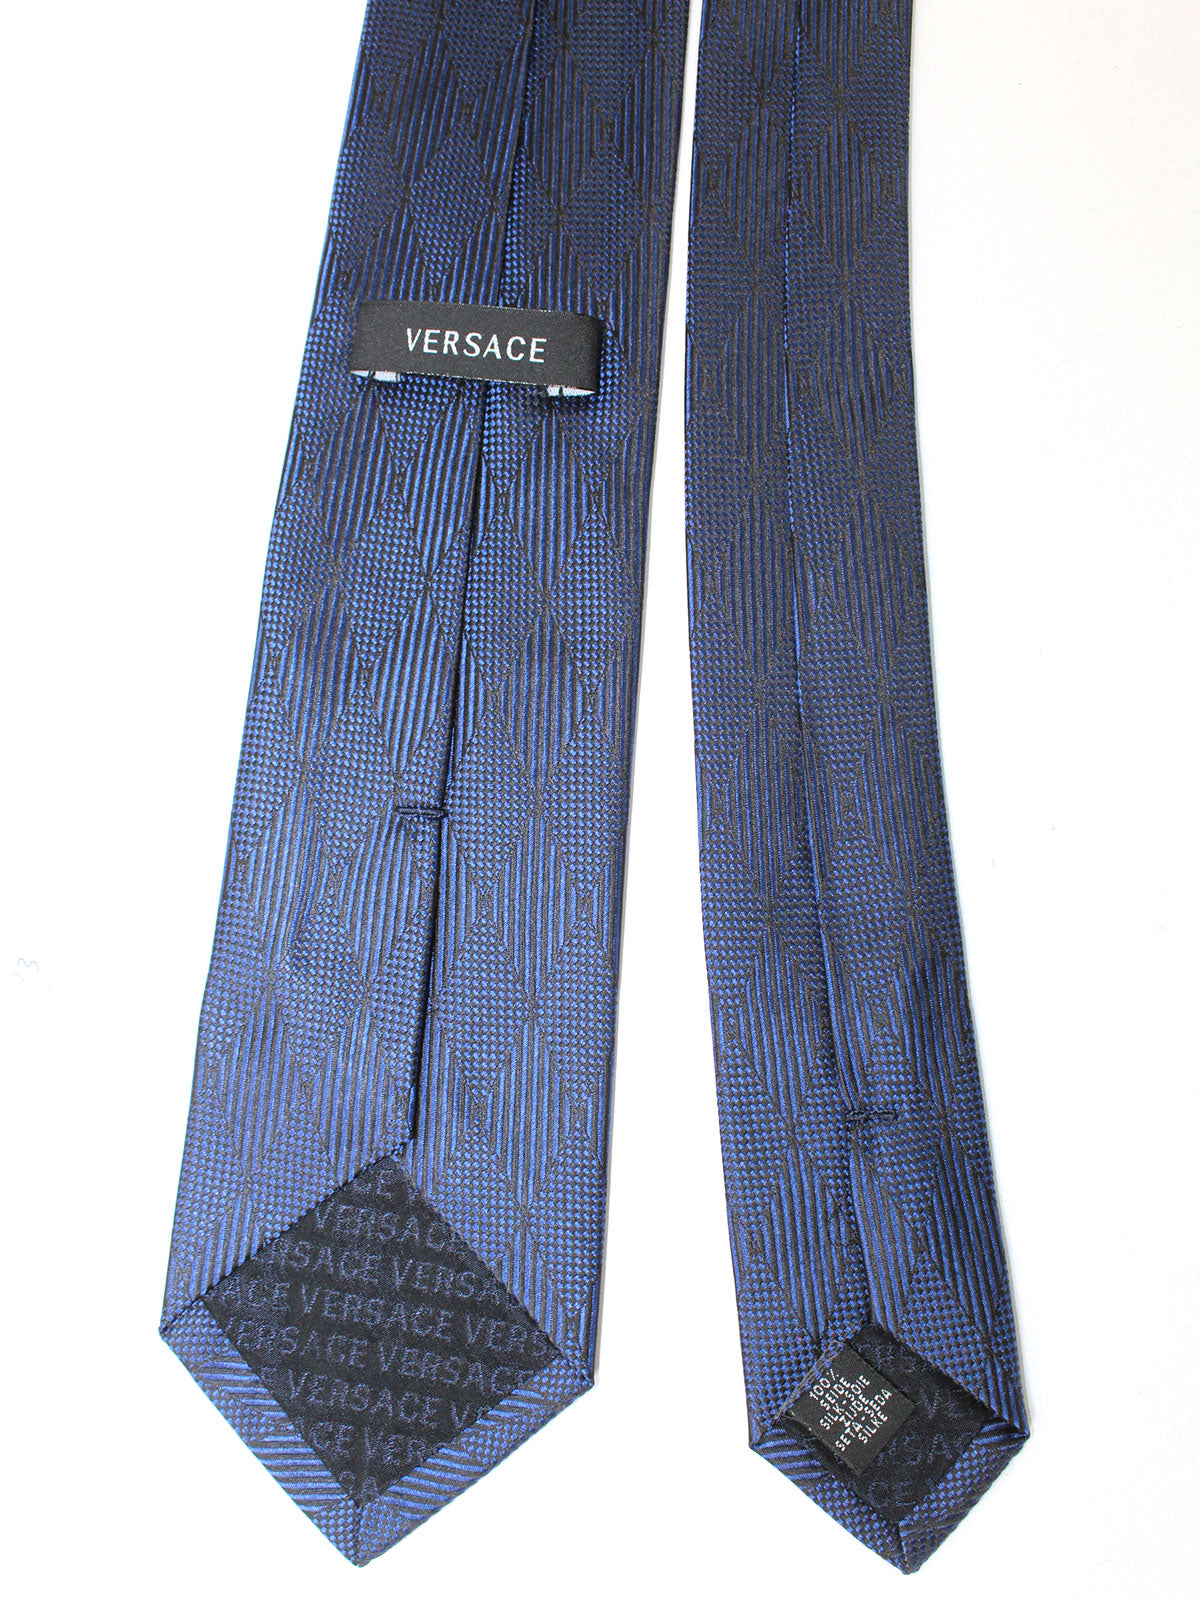 Versace Ties | Discount Designer Neckties SALE - Tie Deals